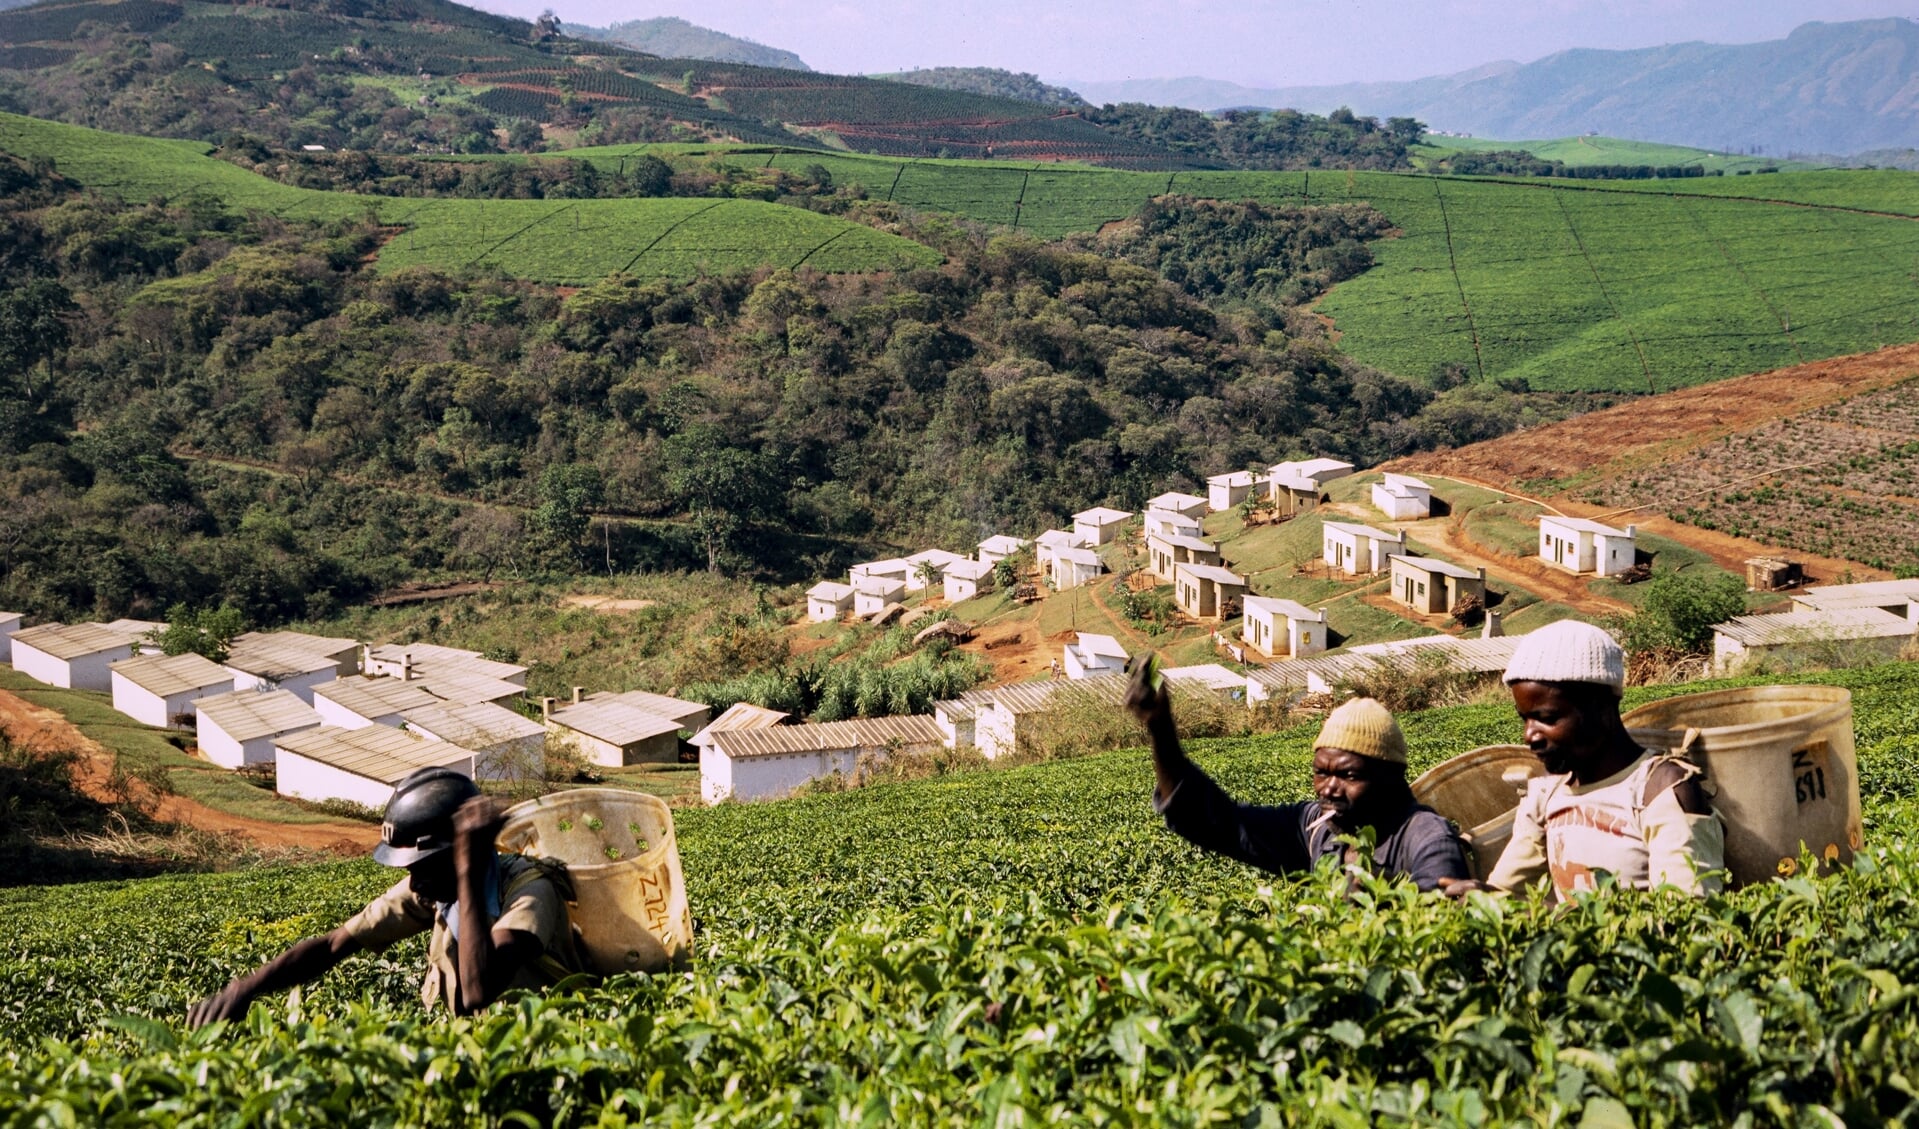 'Afrika zal het continent van de toekomst zijn, waar enorm veel potentie voor het herstel van onze aarde schuilt.' Beeld: theeplukkers op een theeplantage in Zimbabwe. Thee is een belangrijk exportproduct voor het land.